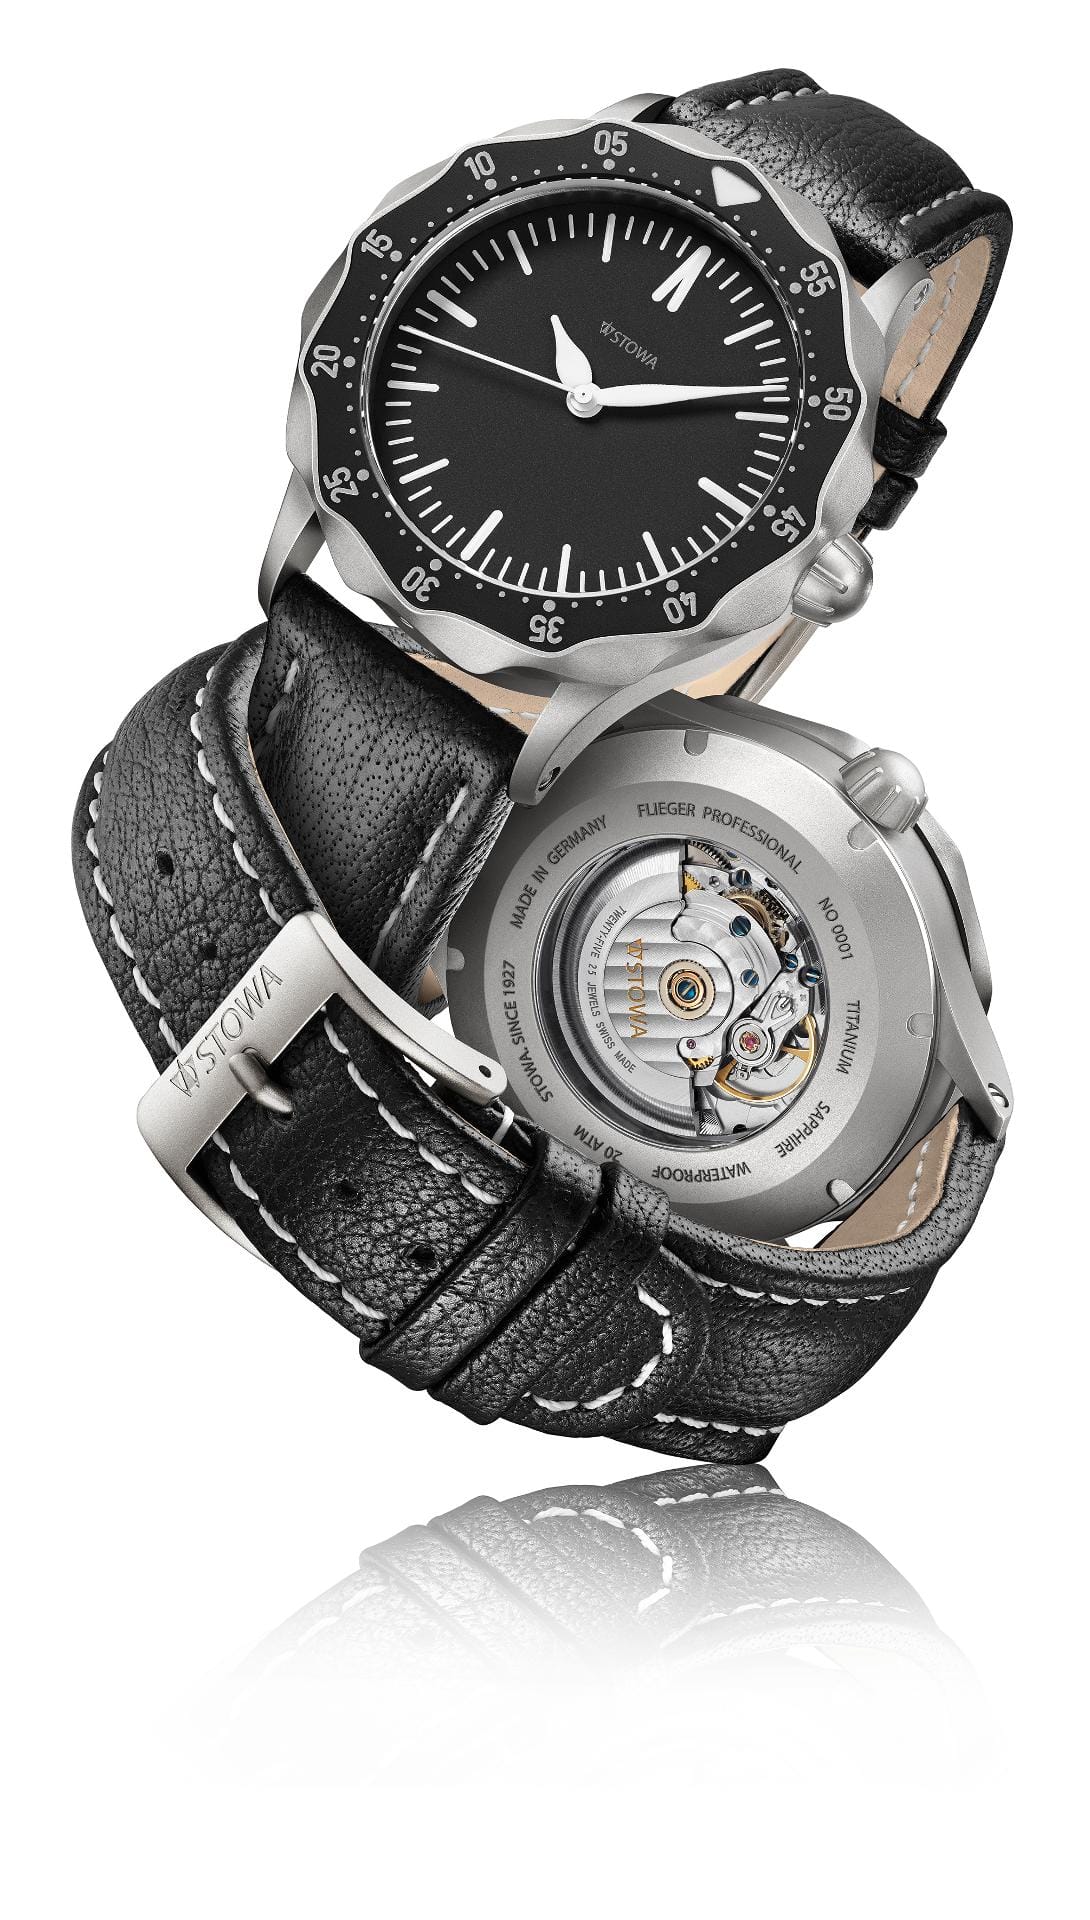 2150 Euro kostet die Uhr mit Titangehäuse und einem Durchmesser von von 46,8 Millimetern.